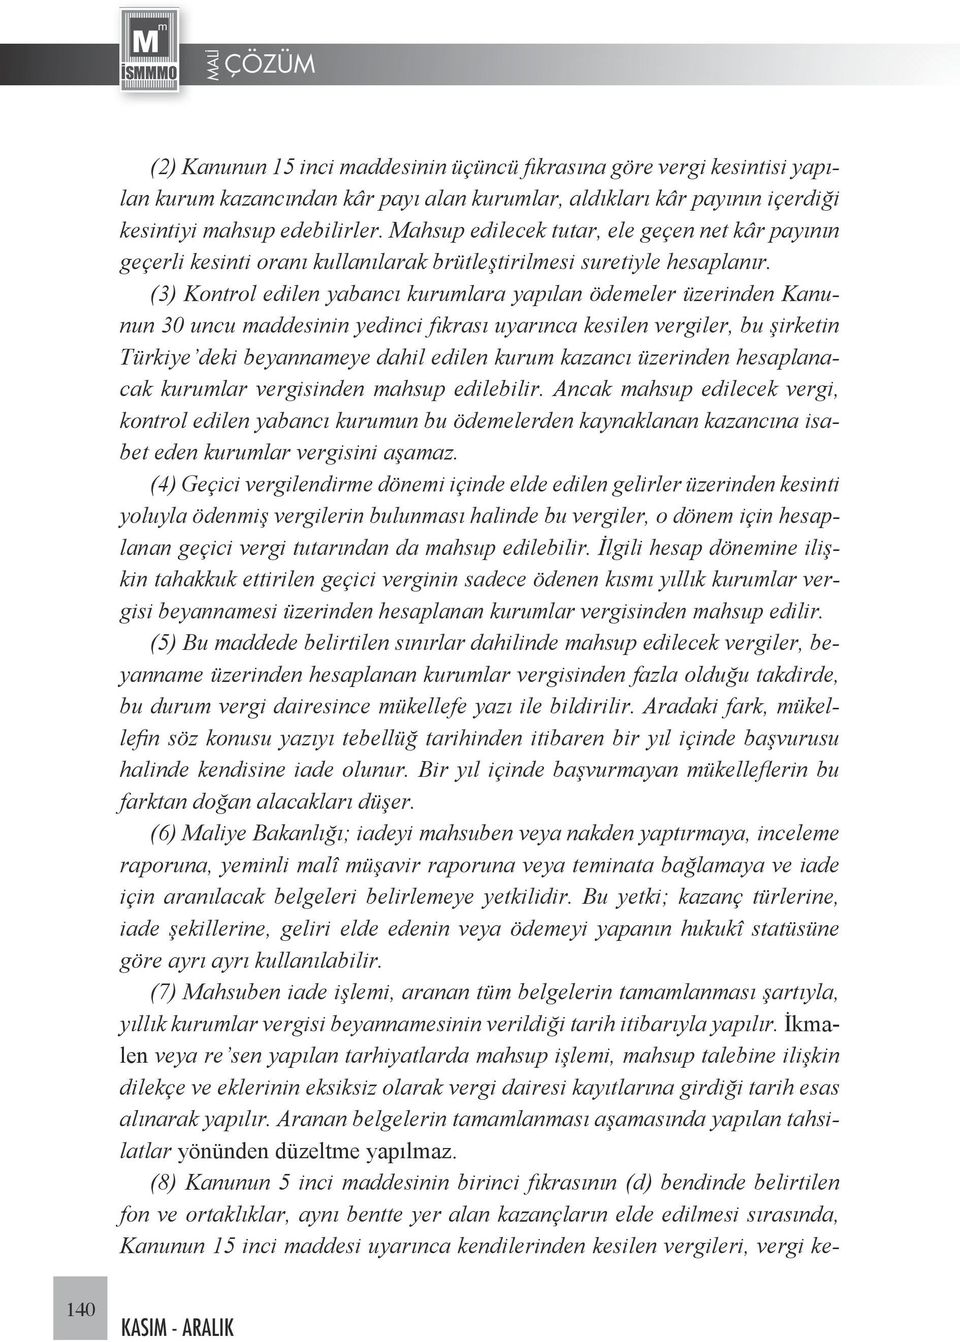 (3) Kontrol edilen yabancı kurumlara yapılan ödemeler üzerinden Kanunun 30 uncu maddesinin yedinci fıkrası uyarınca kesilen vergiler, bu şirketin Türkiye deki beyannameye dahil edilen kurum kazancı